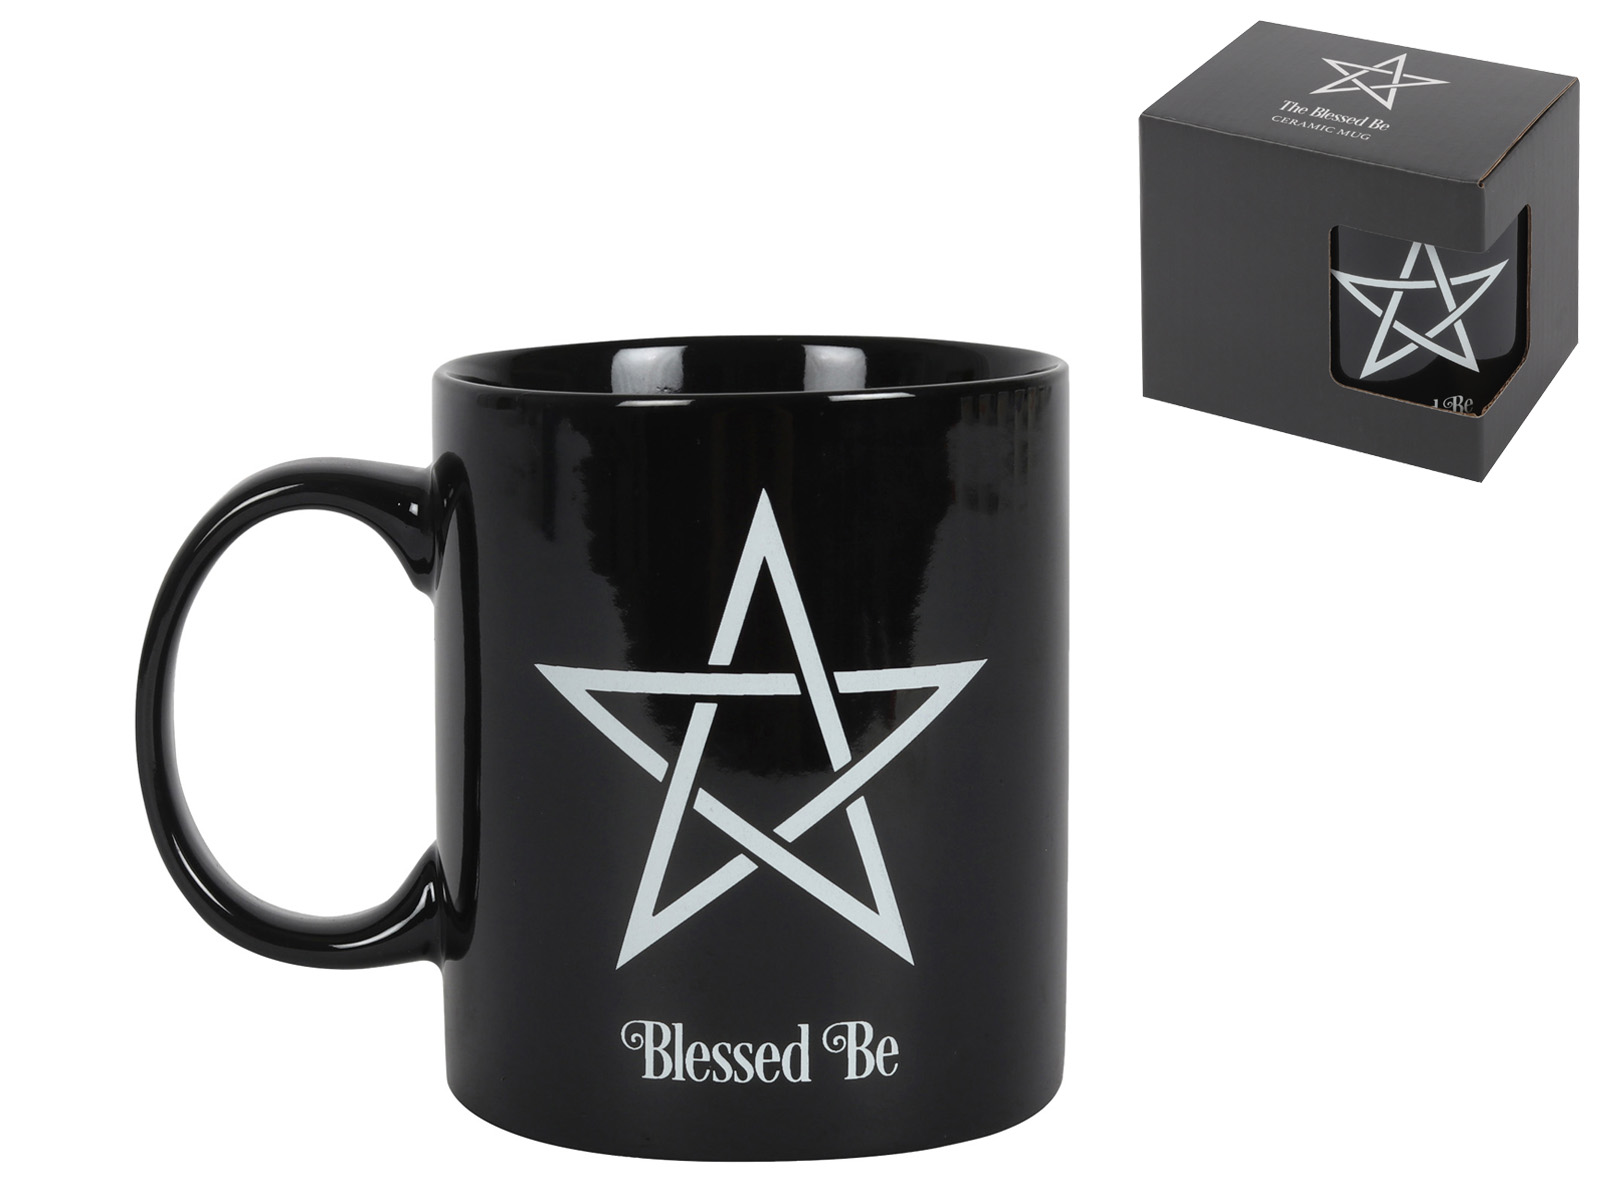 "Blessed Be" Pentagram Mug in Gift Box